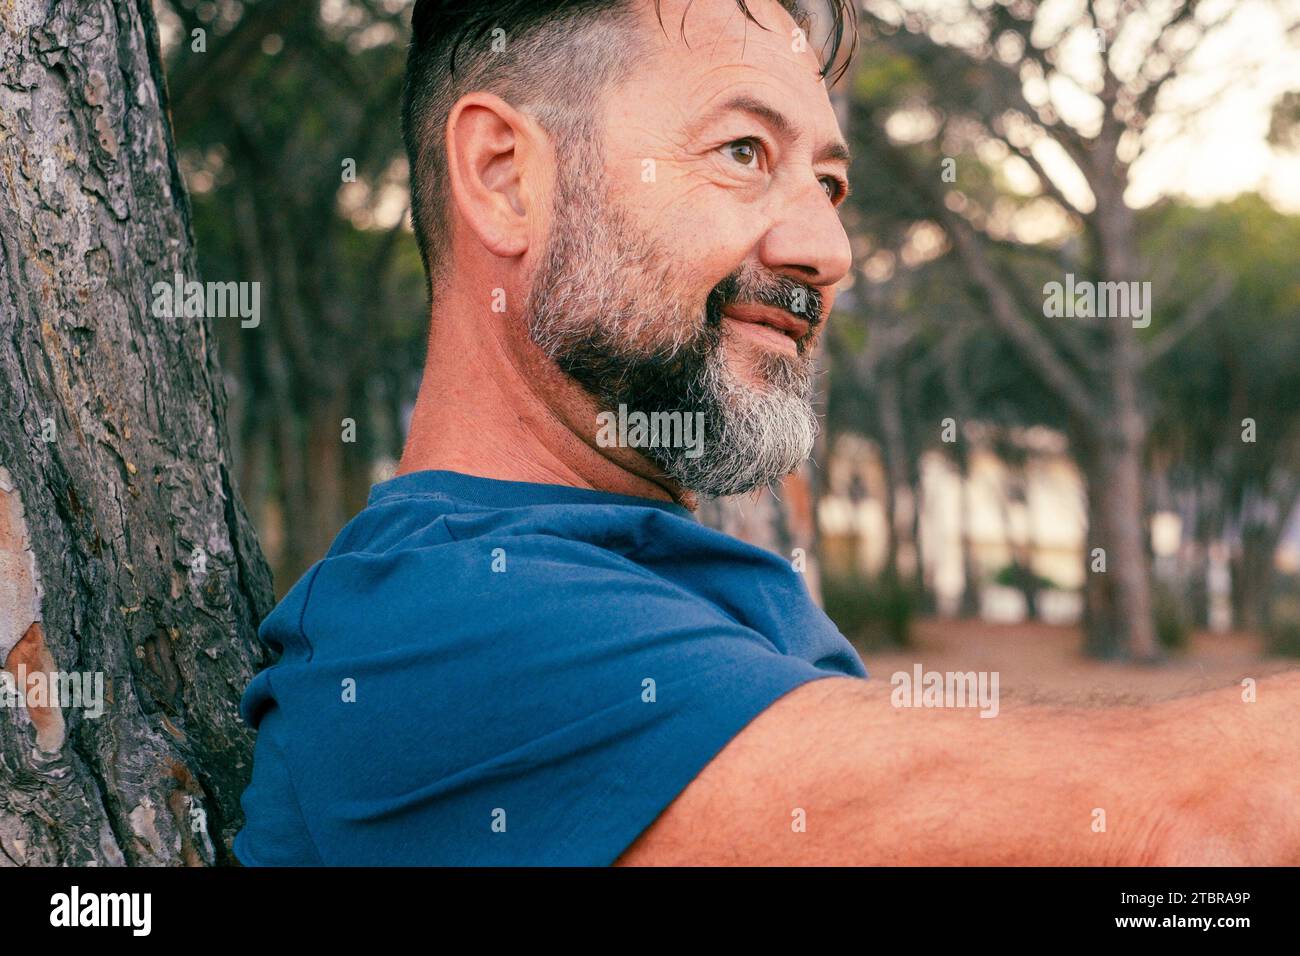 Portrait rapproché latéral d'un homme adulte avec barbe souriant et profitant du temps de détente au parc. Des gens heureux et sereins avec une expression joyeuse. Bonne journée. Beau mâle 50 ans dehors. Lieu de la nature Banque D'Images